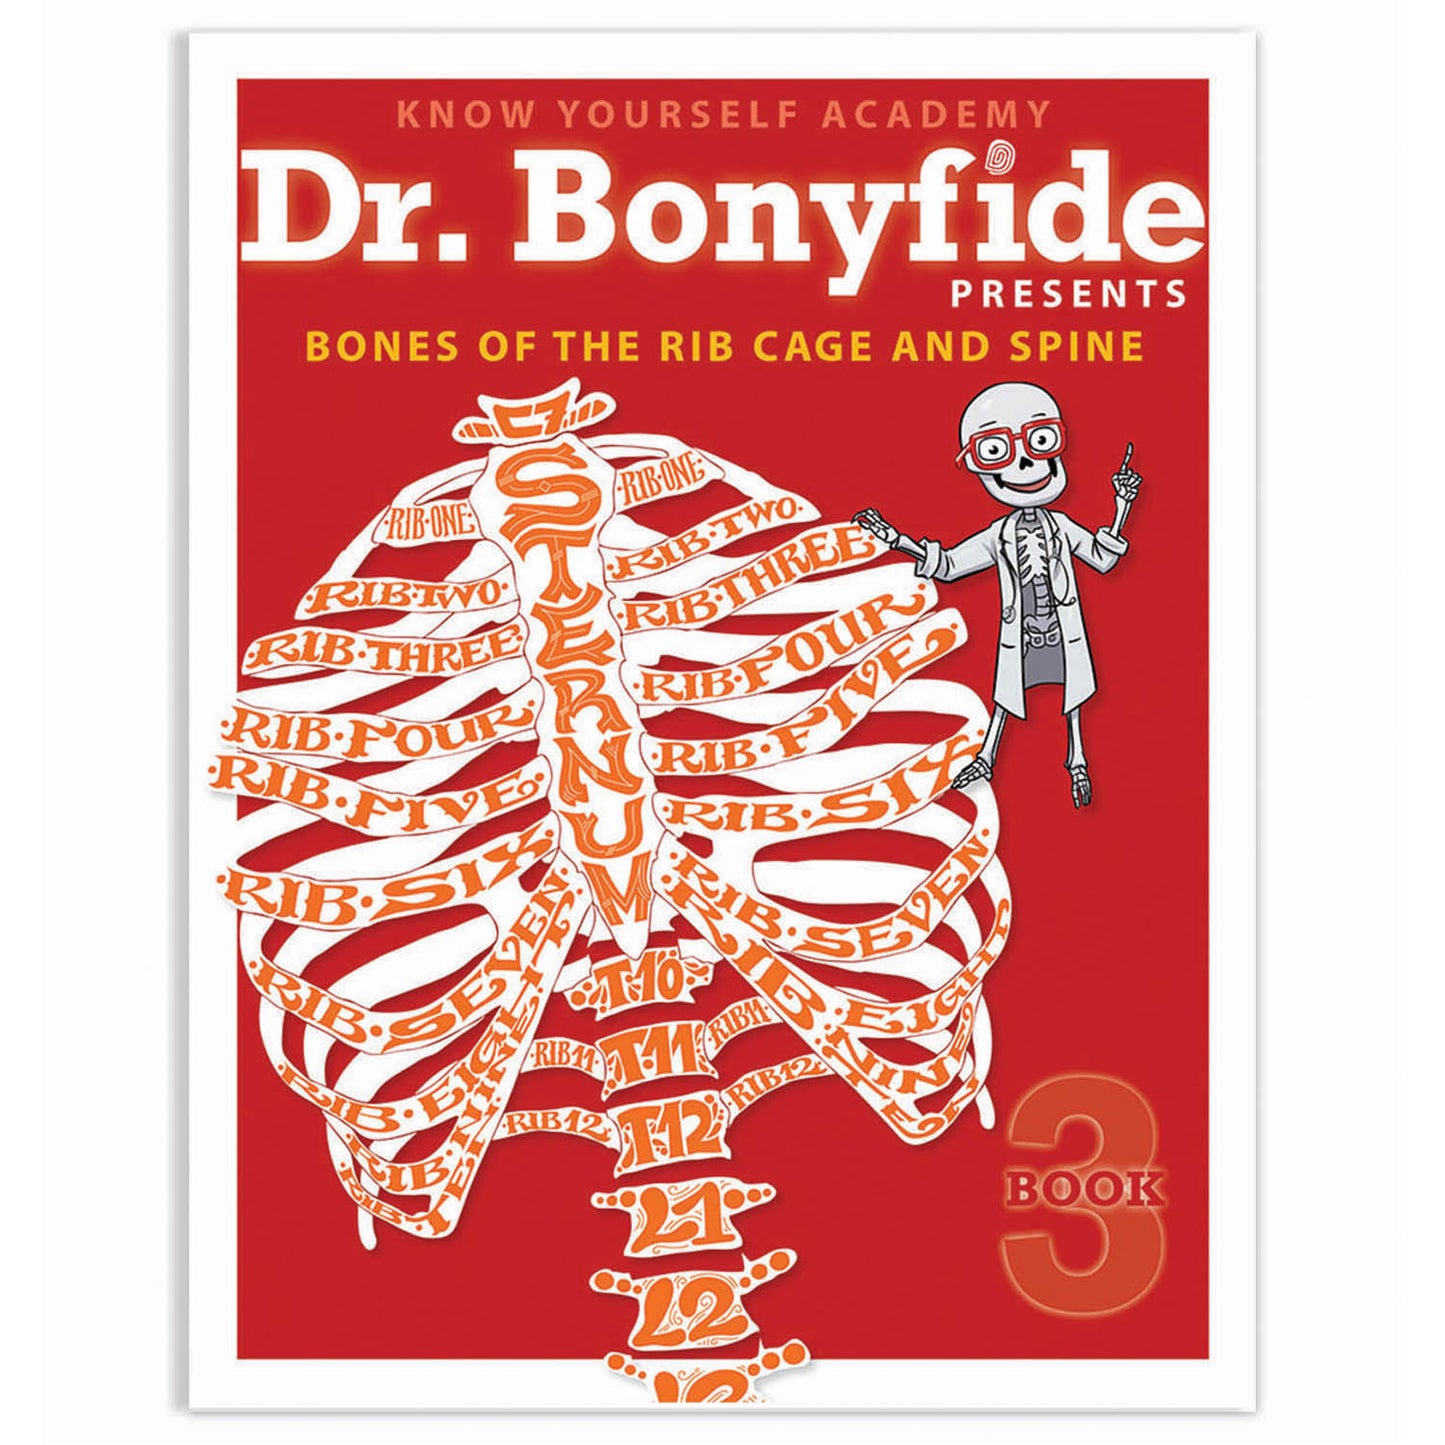 4 Book Set: Dr. Bonyfide Presents 206 Bones of the Human Body